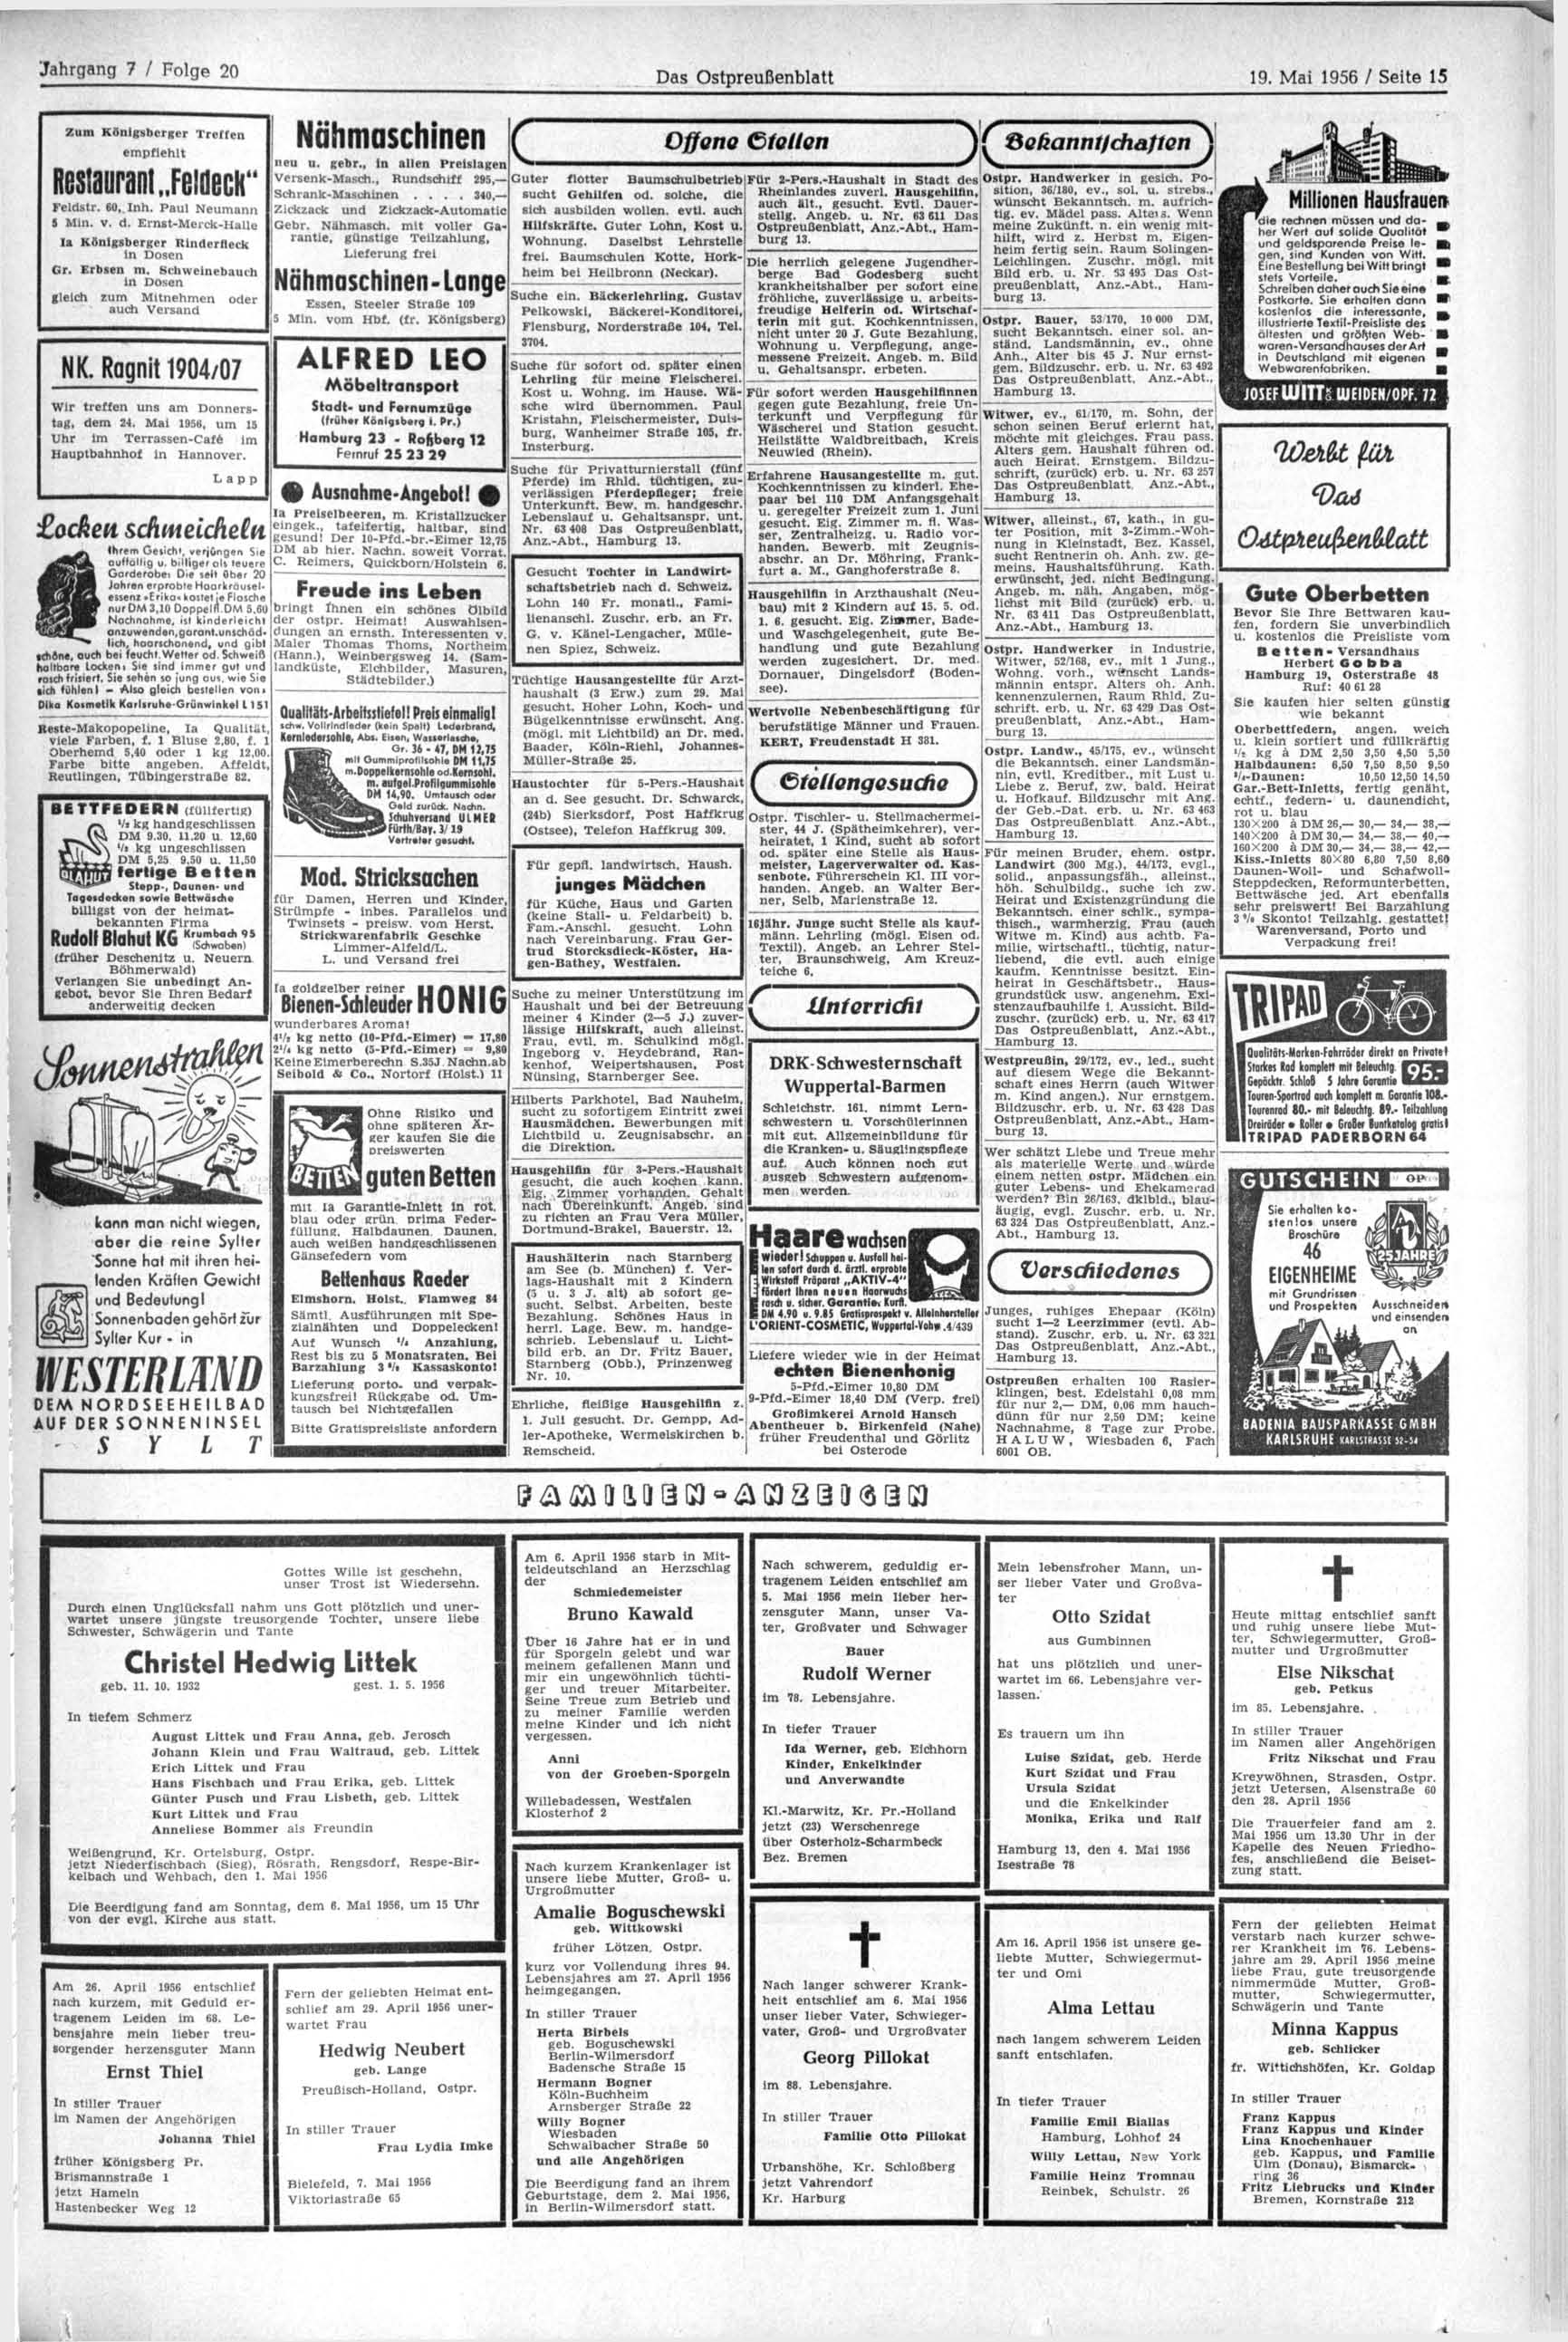 Das Ostpreußenblatt 19. Mai 1956 / Seite 15 Zum Königsberger Treffen empfiehlt Restaurant FeidecH" Feldstr. 60, Inh. Paul Neumann S Min. v. d.